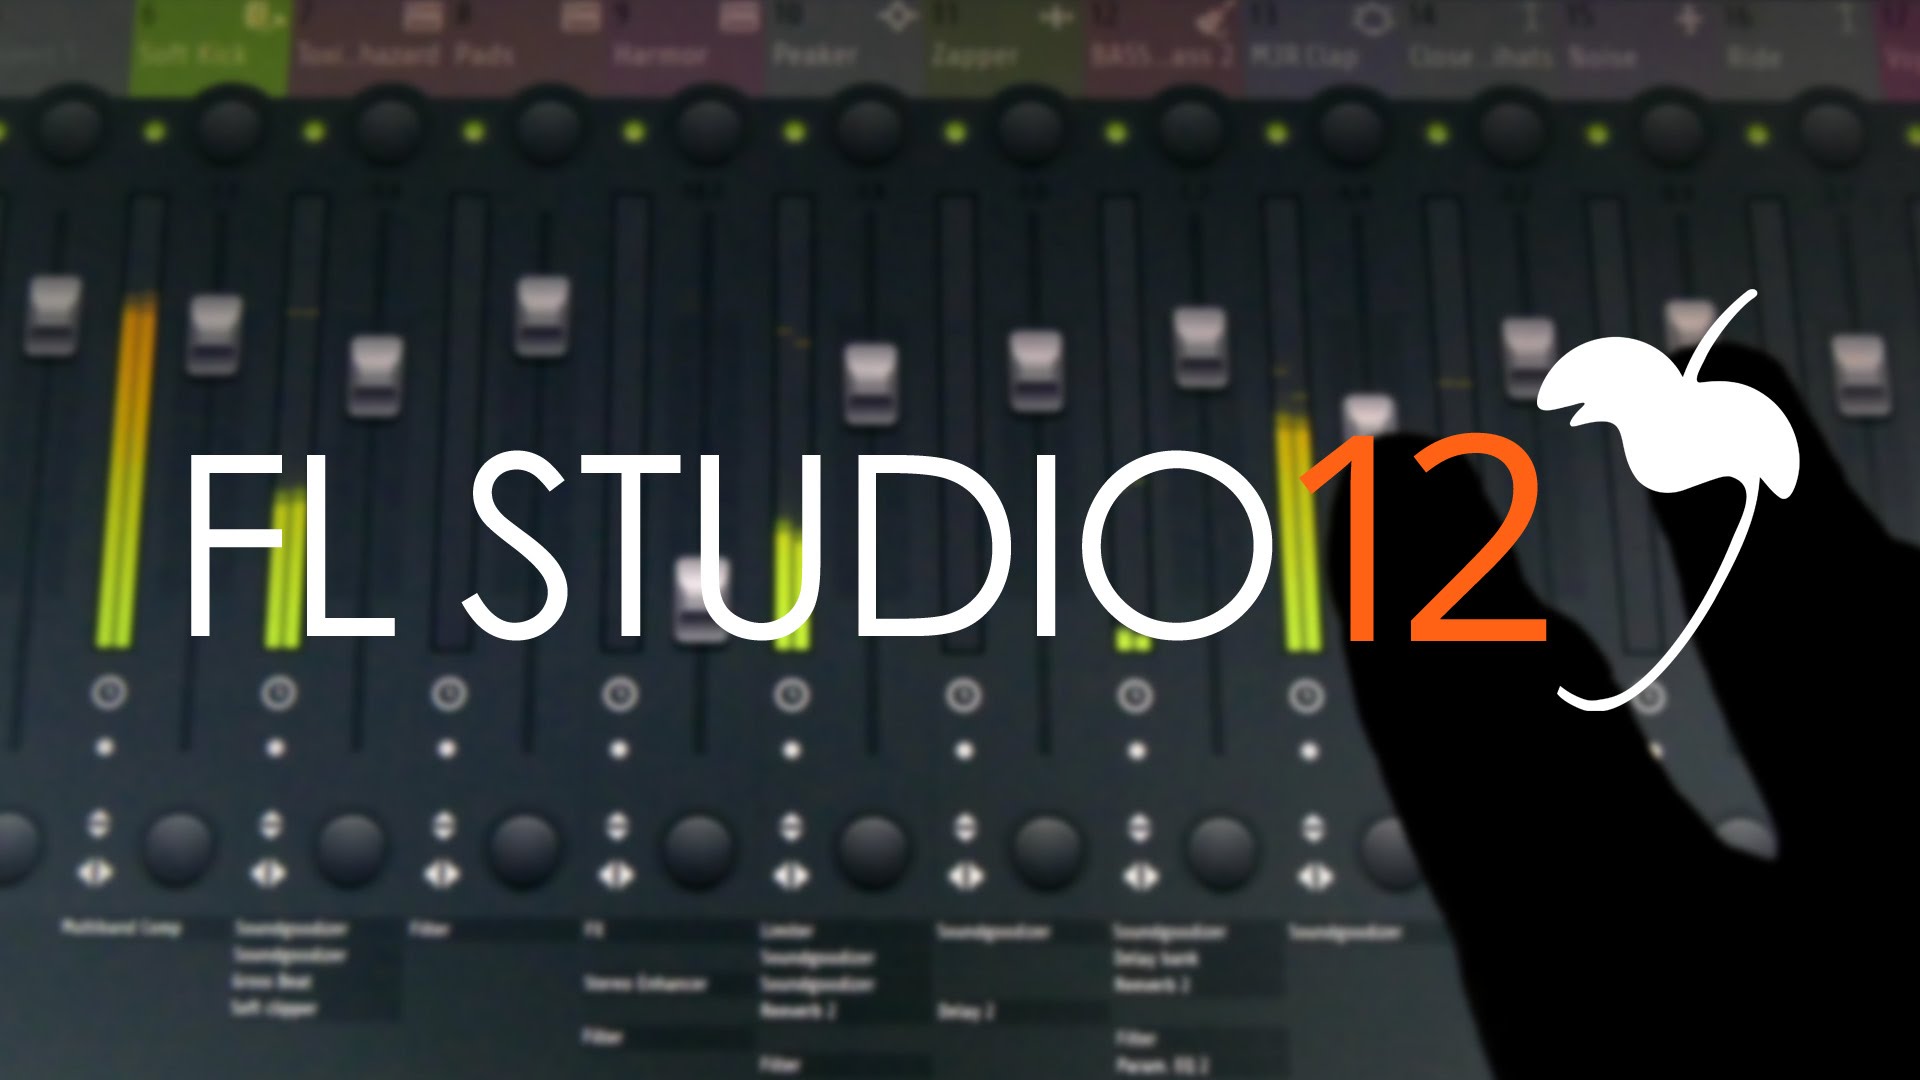 Fl studio 12.1.3 keygen